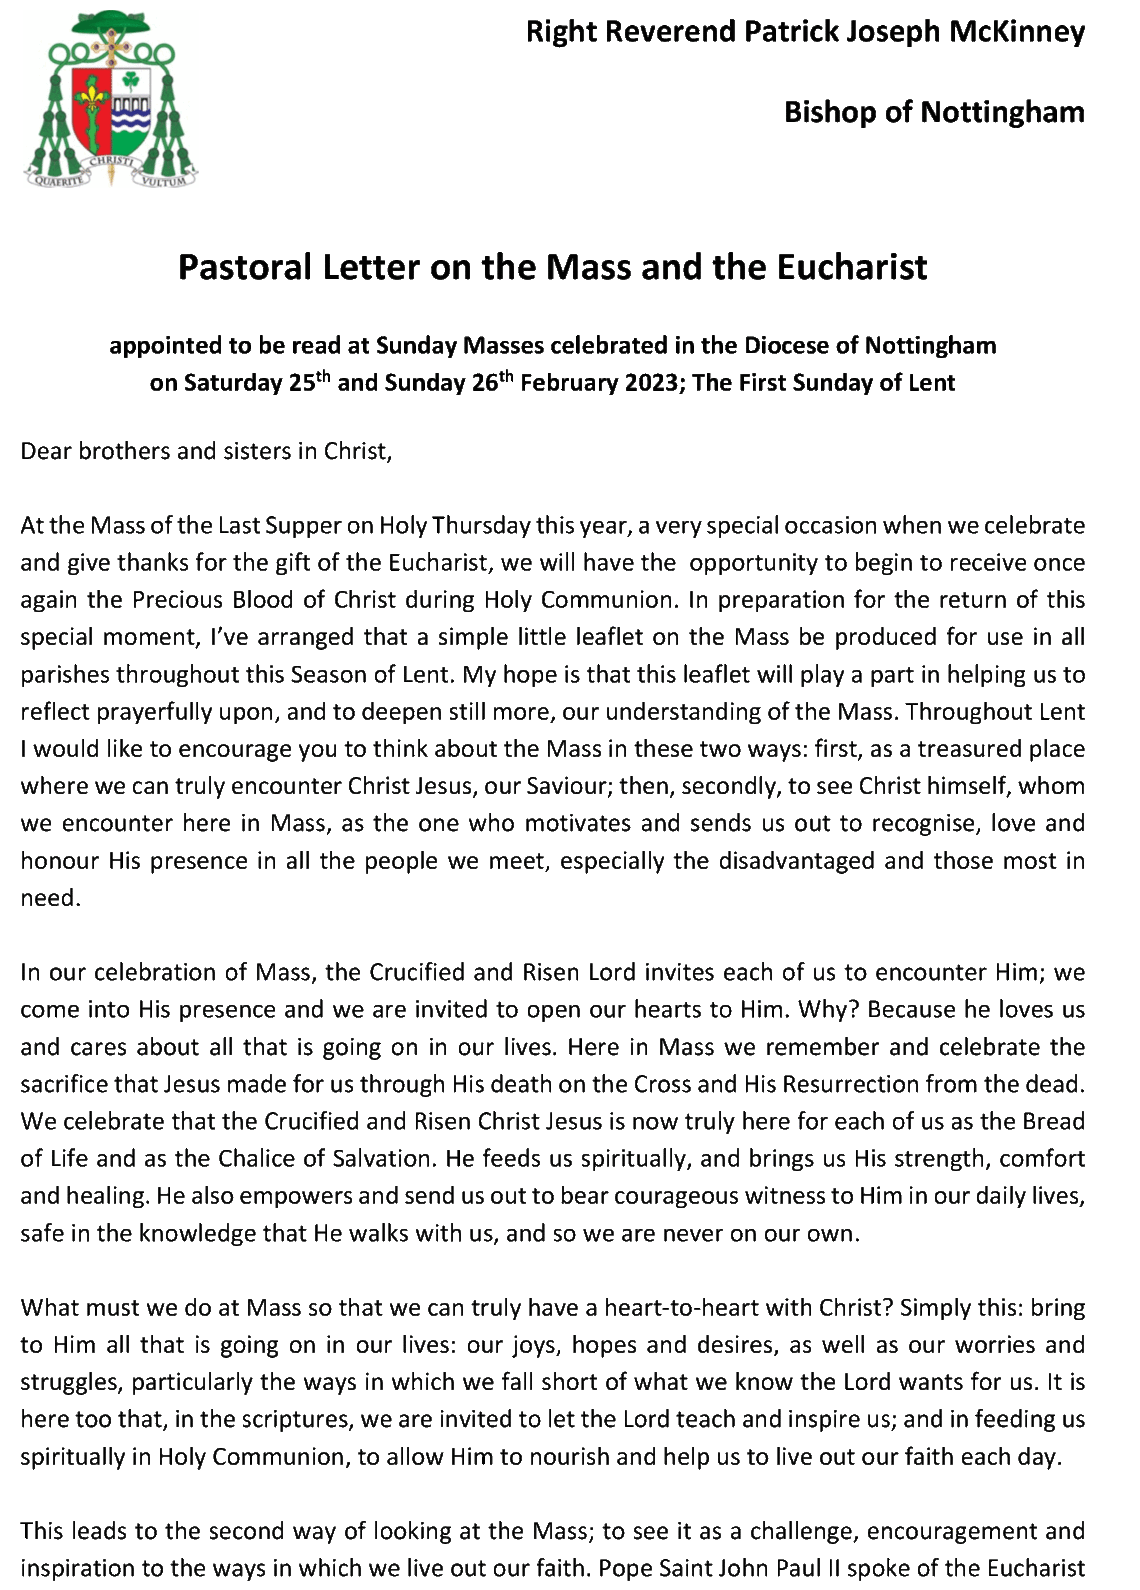 Bishops Letter